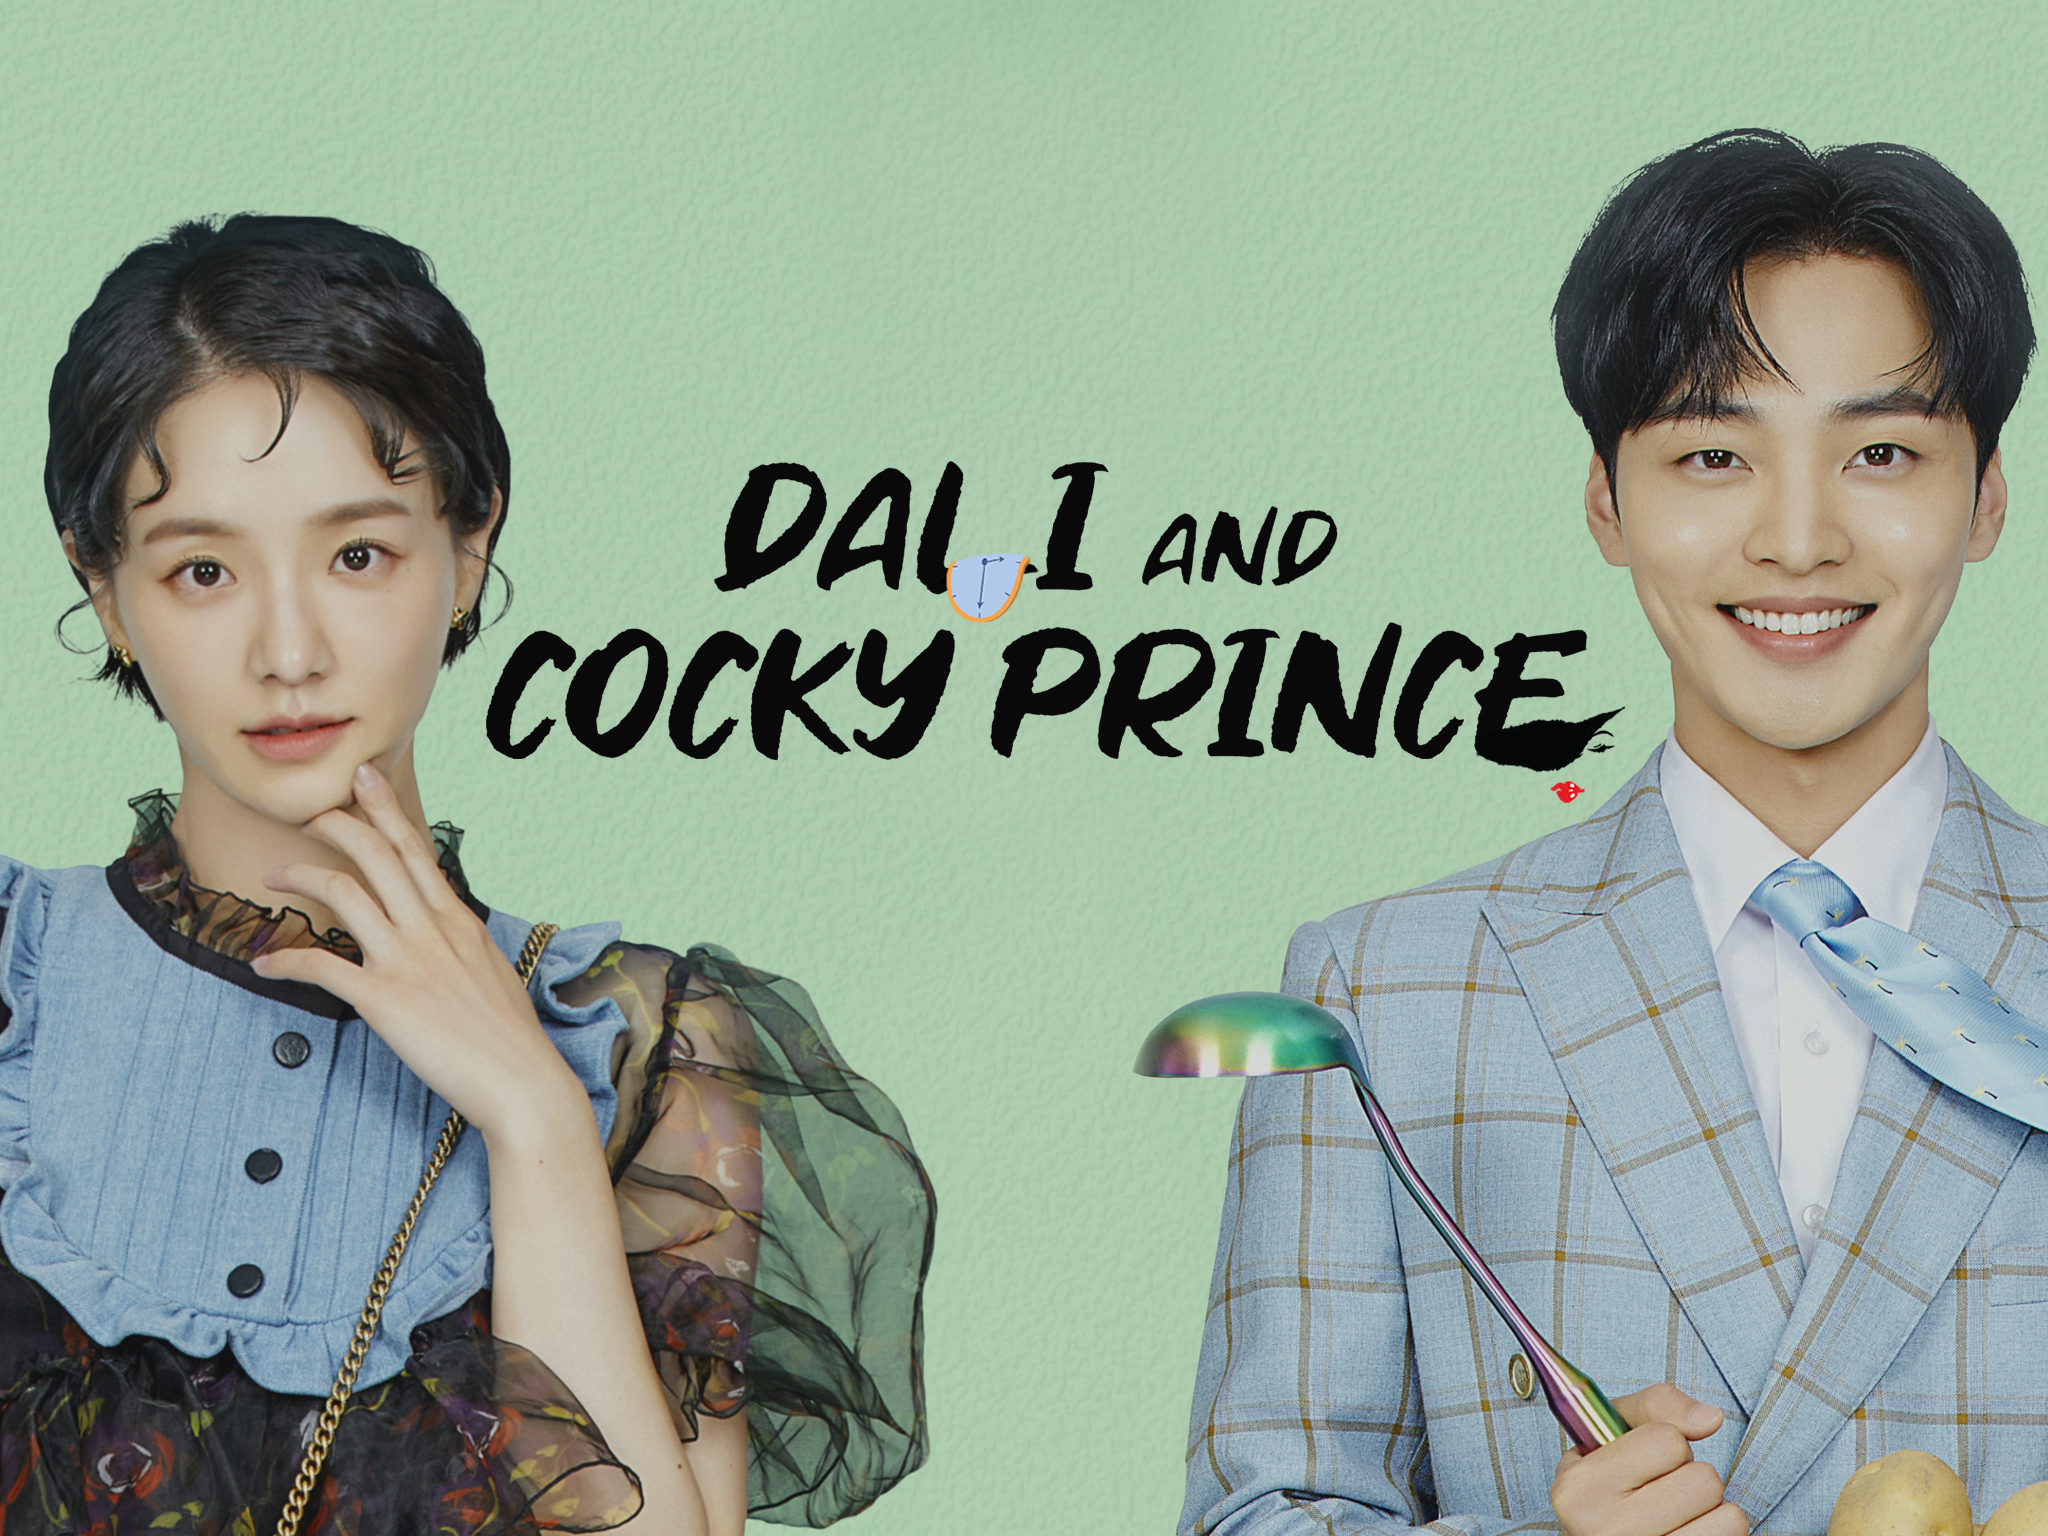 Dali Và Hoàng Tử Ngổ Ngáo – Dali And Cocky Prince (2021) Full HD Vietsub – Tập 3